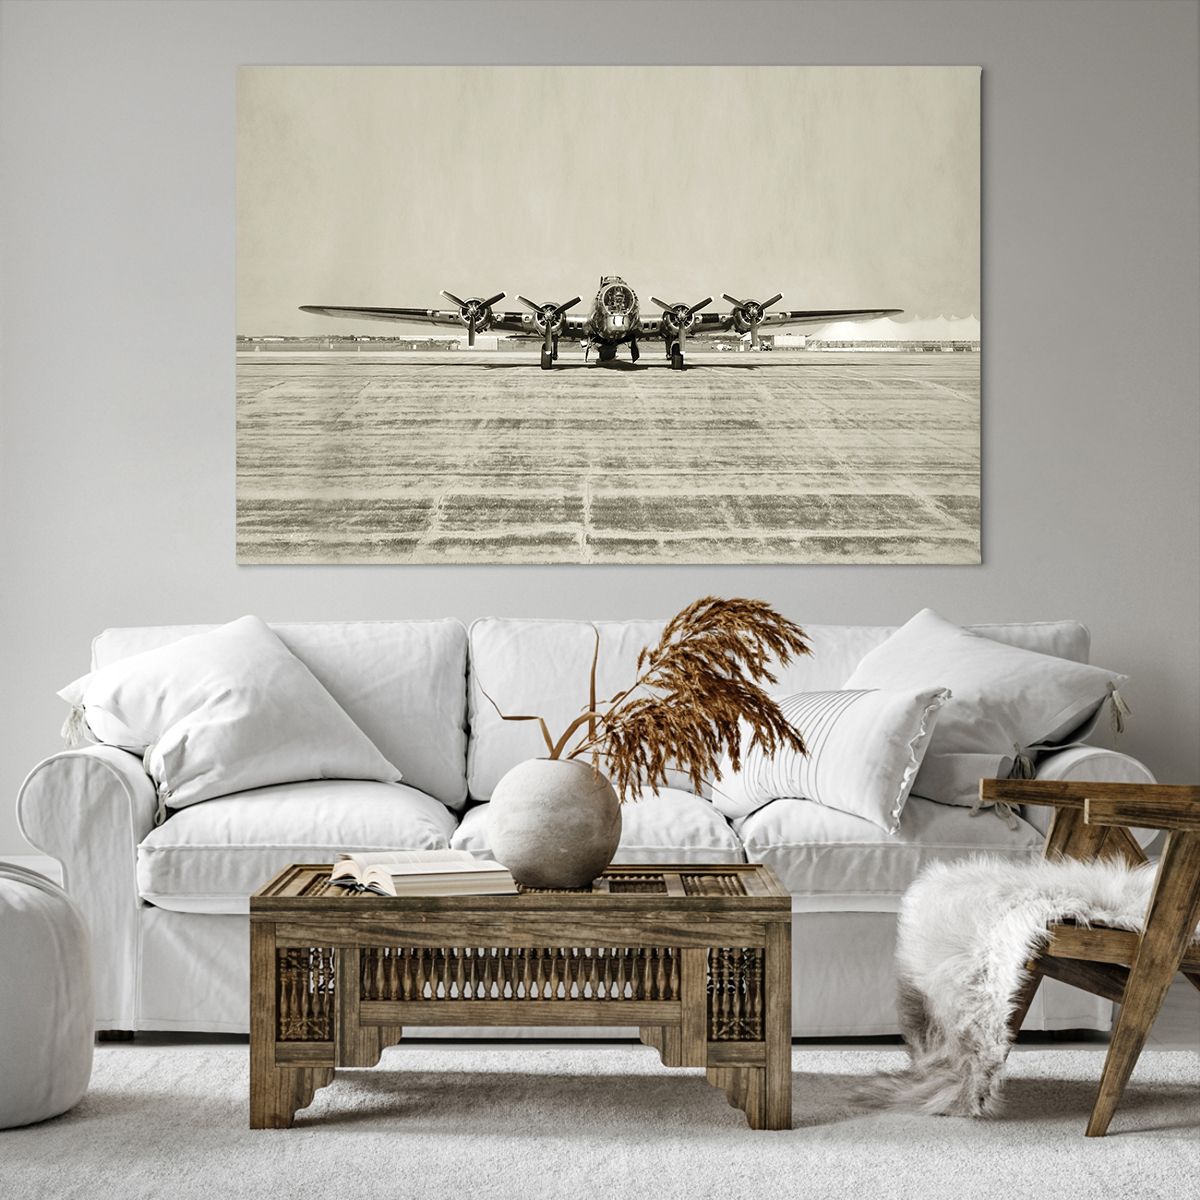 Obrazy na płótnie Samolot Wojskowy, Obrazy na płótnie Lotnisko, Obrazy na płótnie Bombowiec, Obrazy na płótnie Vintage, Obrazy na płótnie Sepia